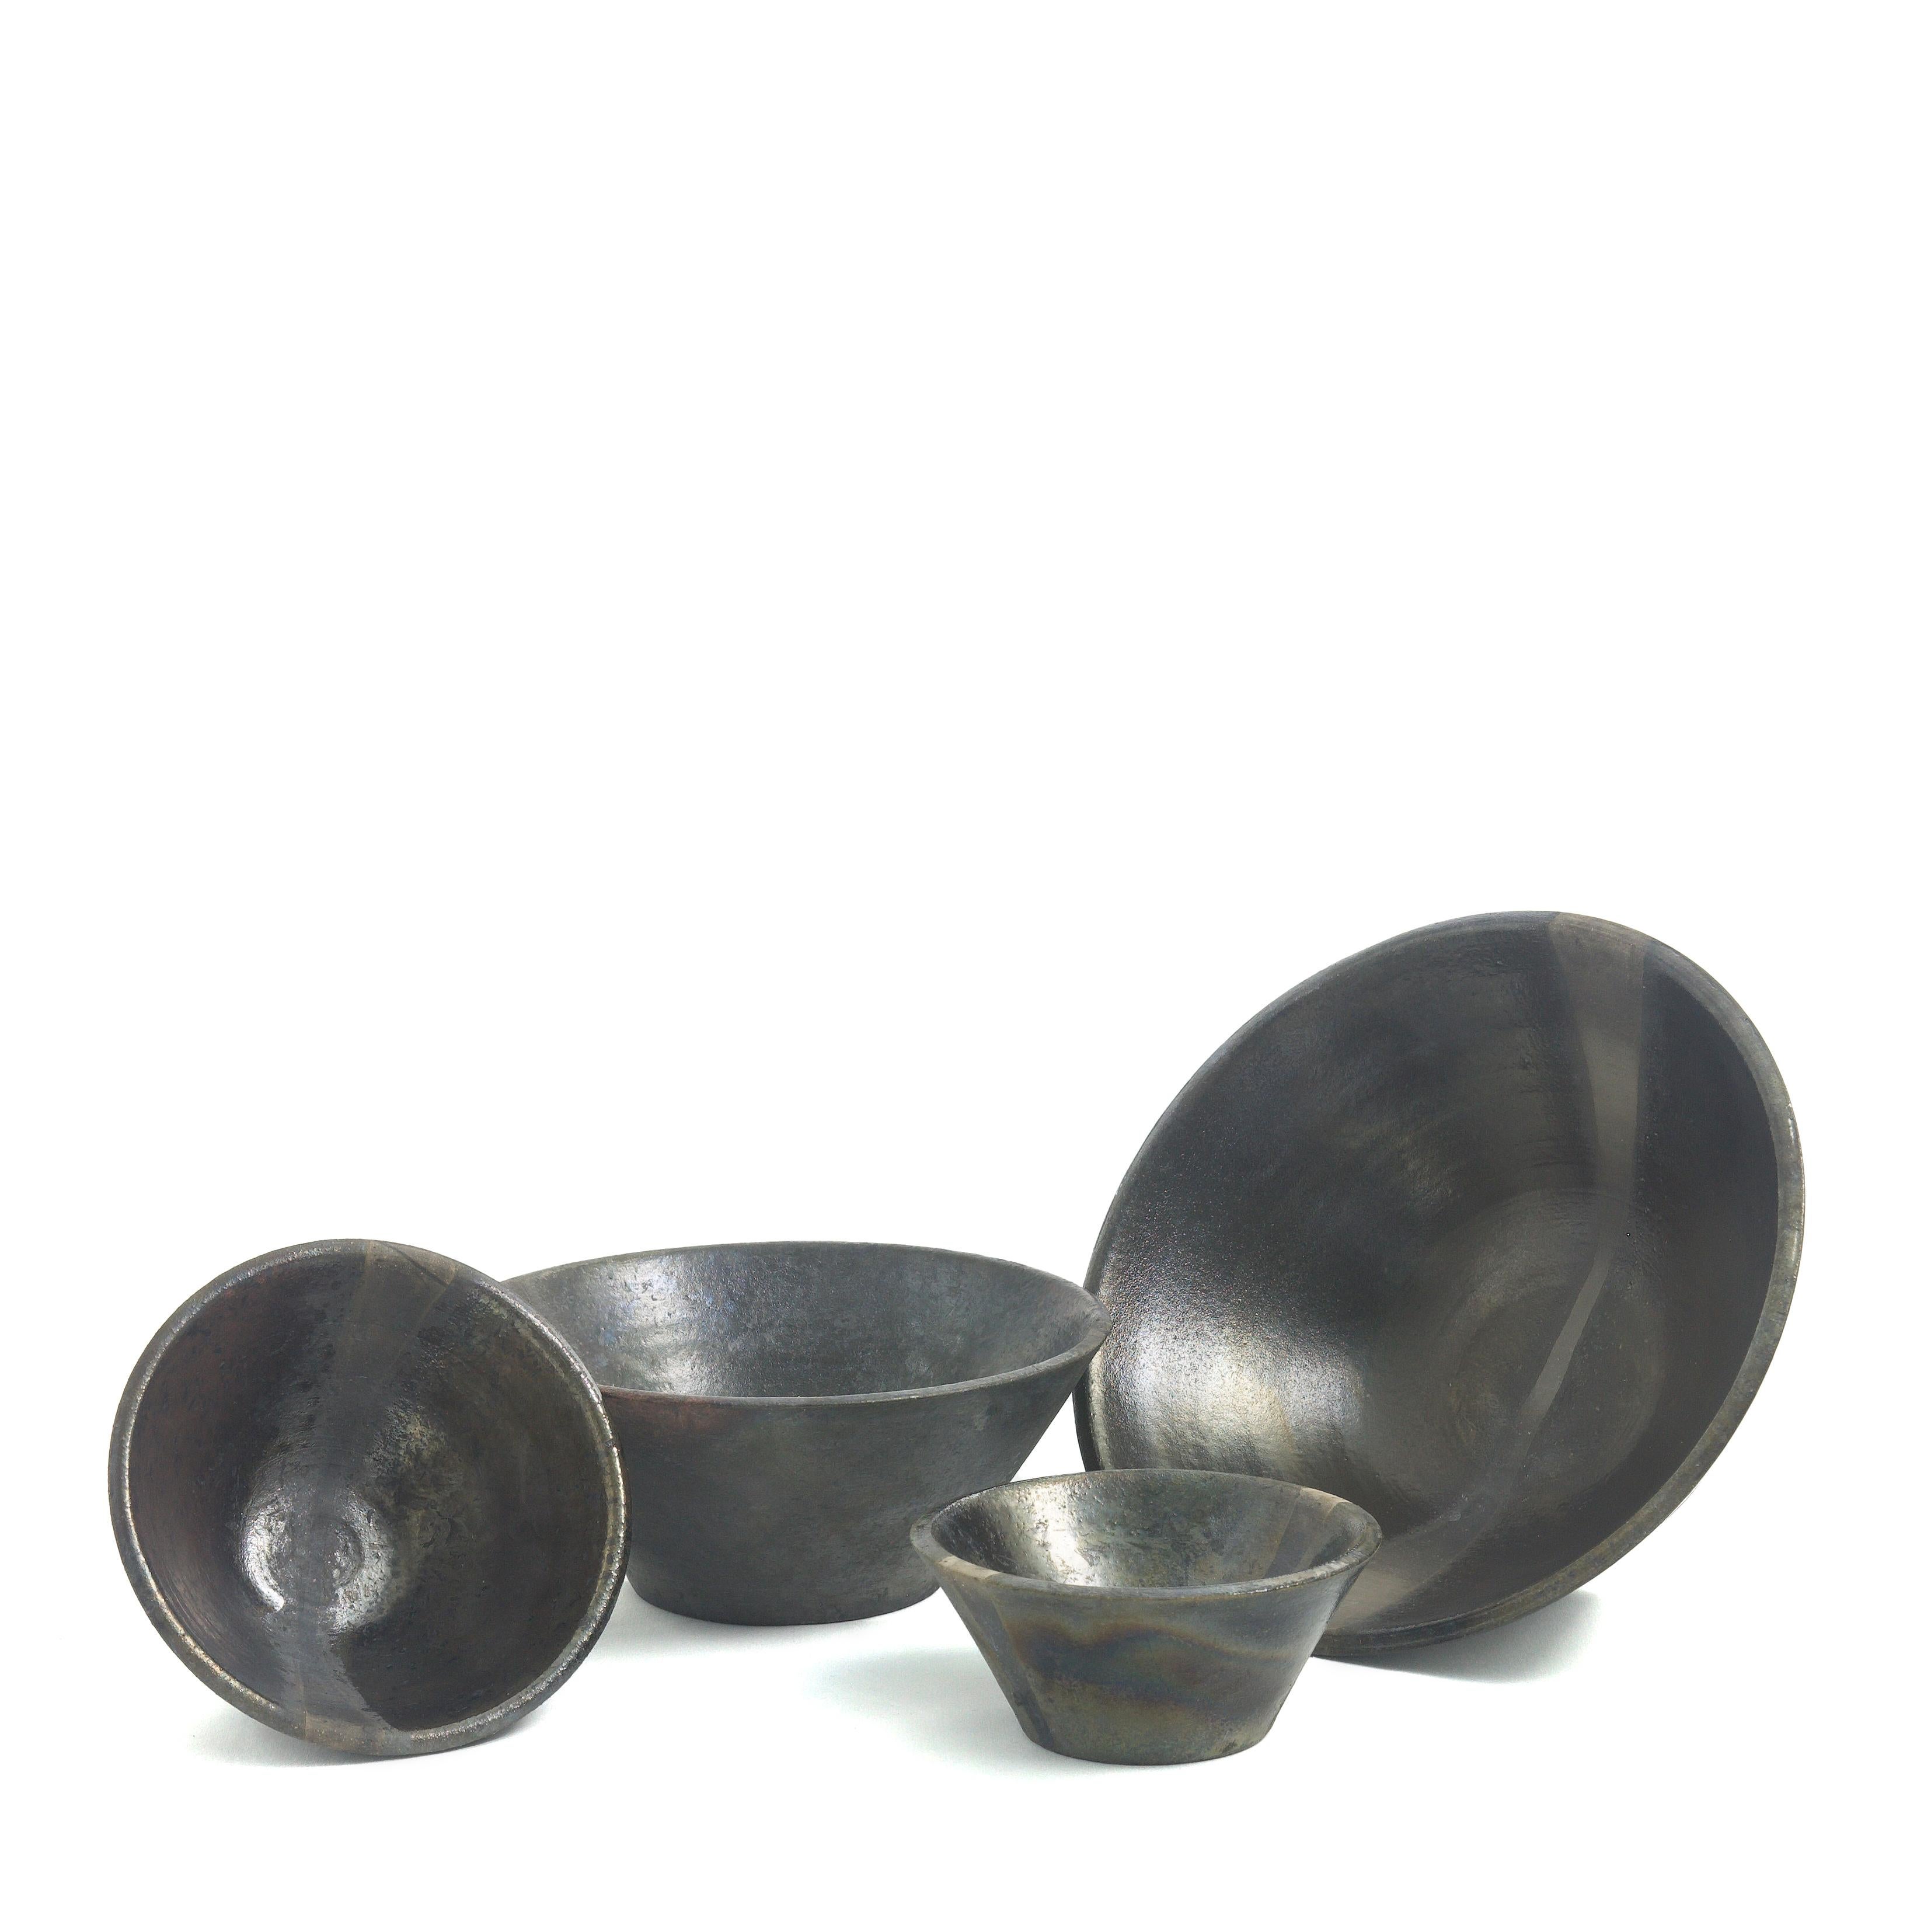 Modern Japanese Minimalistic LAAB Black Fringe Set Of 4 Bowls Raku Ceramics Black Metal For Sale